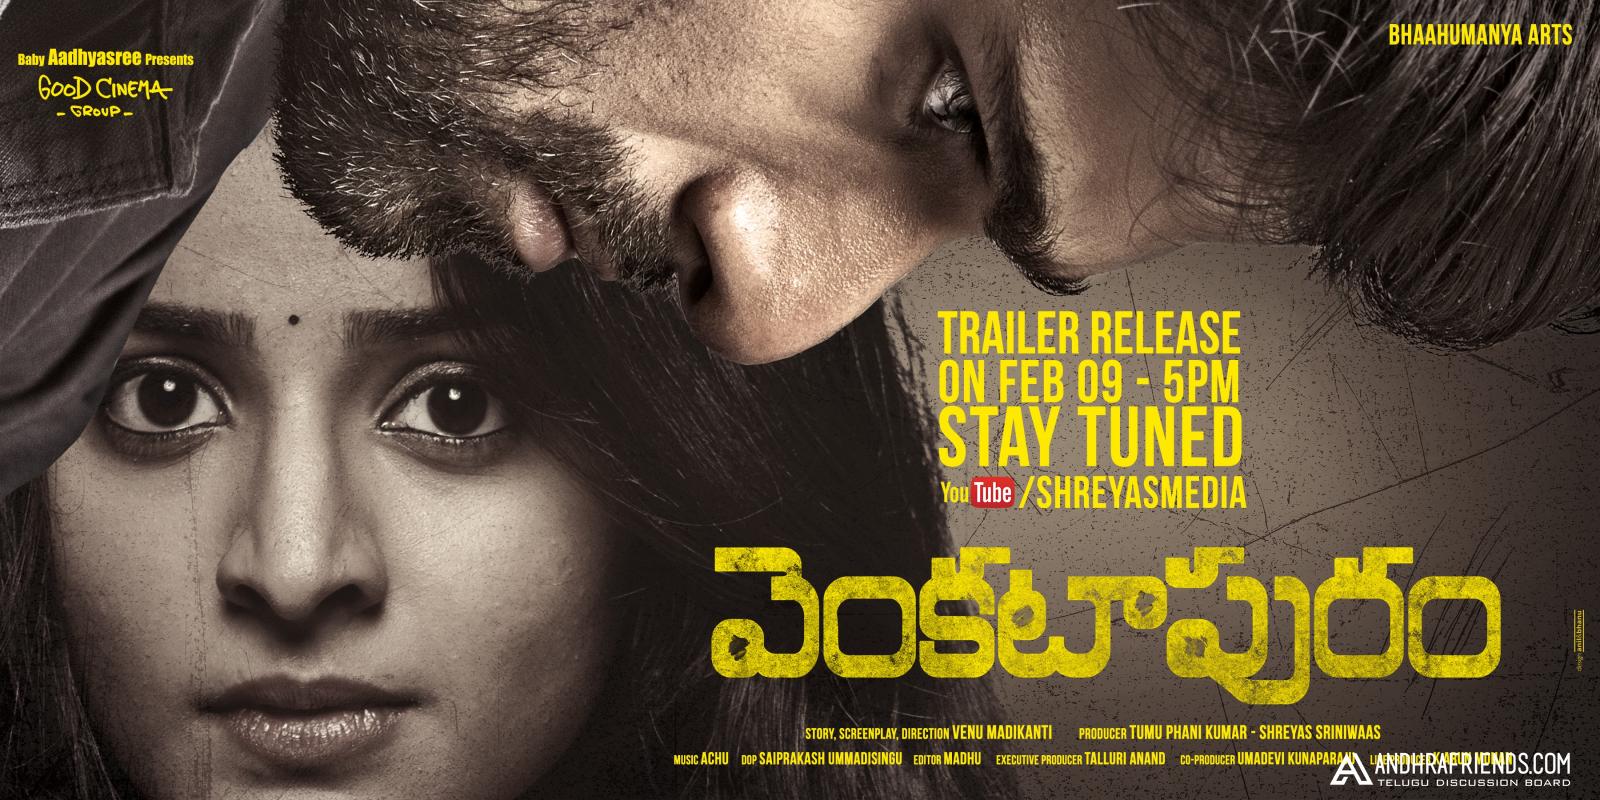 Venkatapuram Theater Trailer Launch Poster